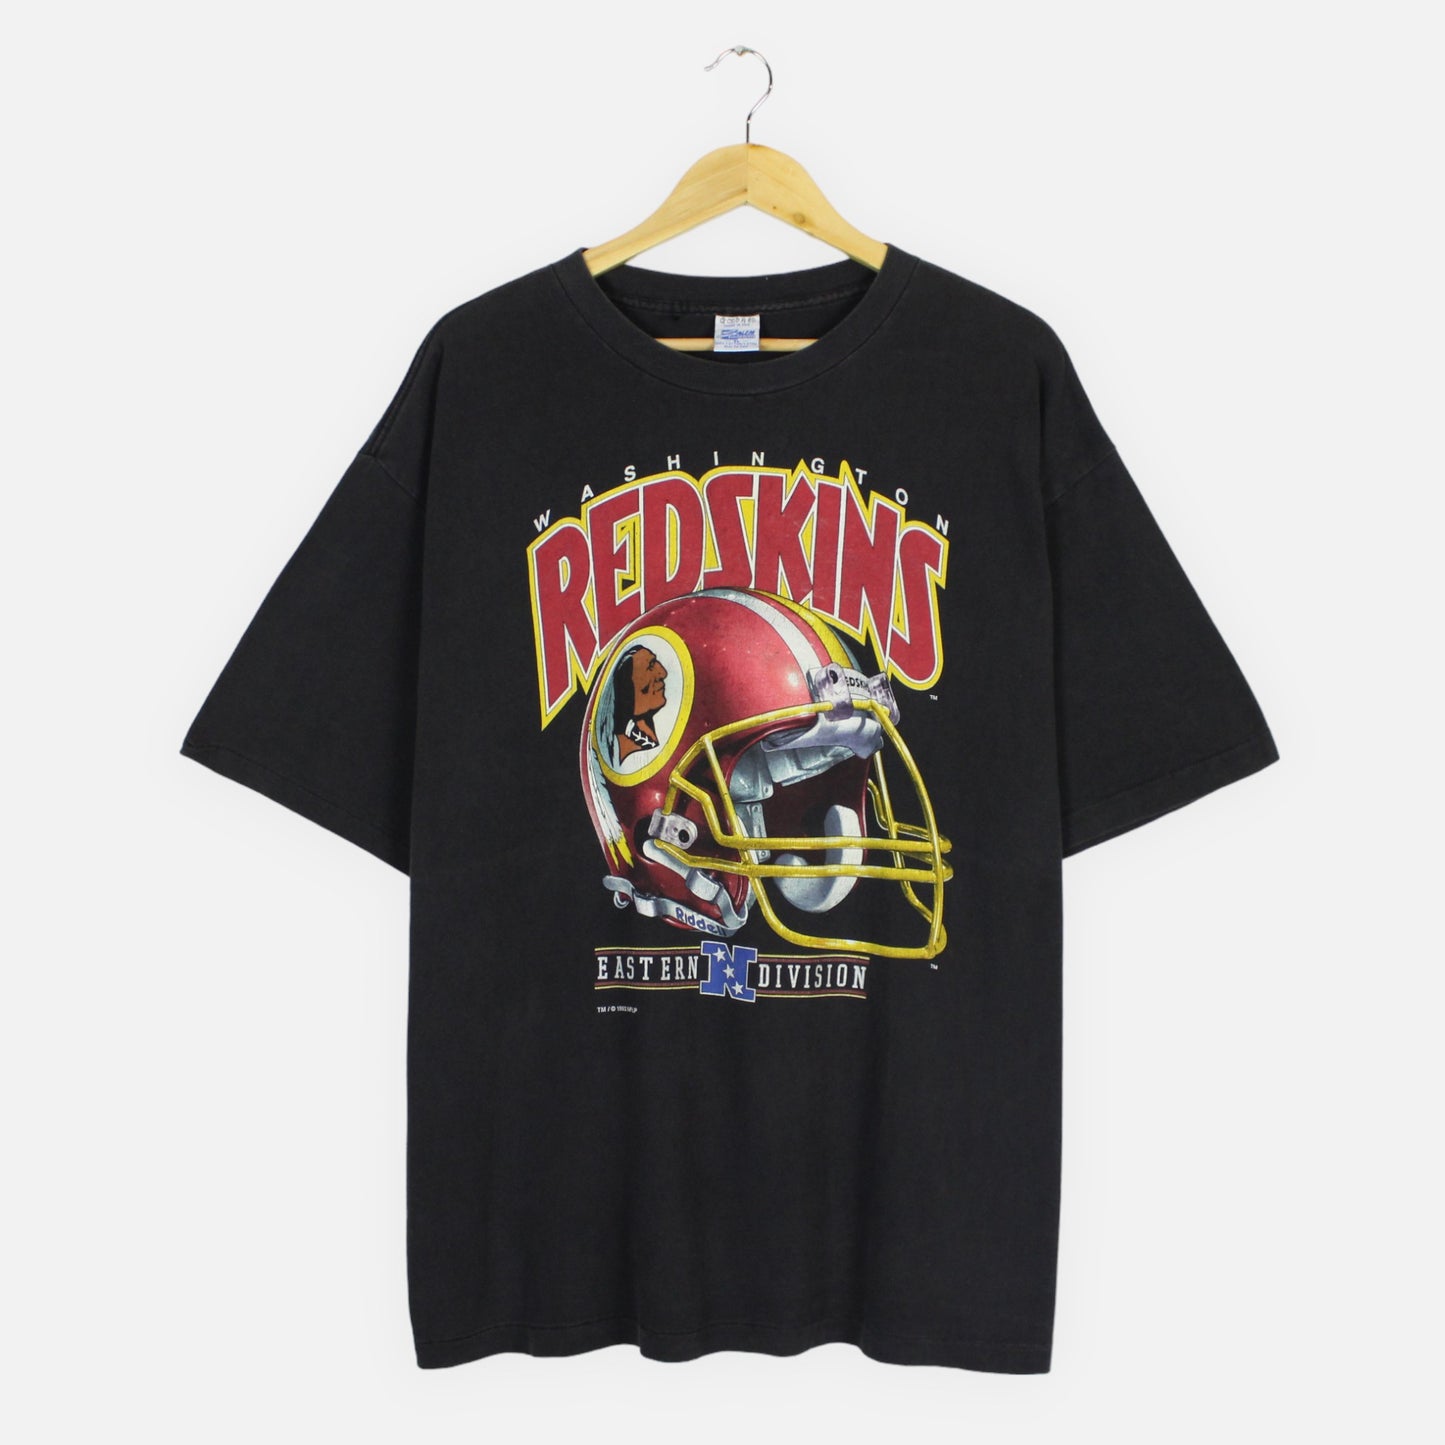 Vintage 1993 Washington Redskins NFL Tee - XL